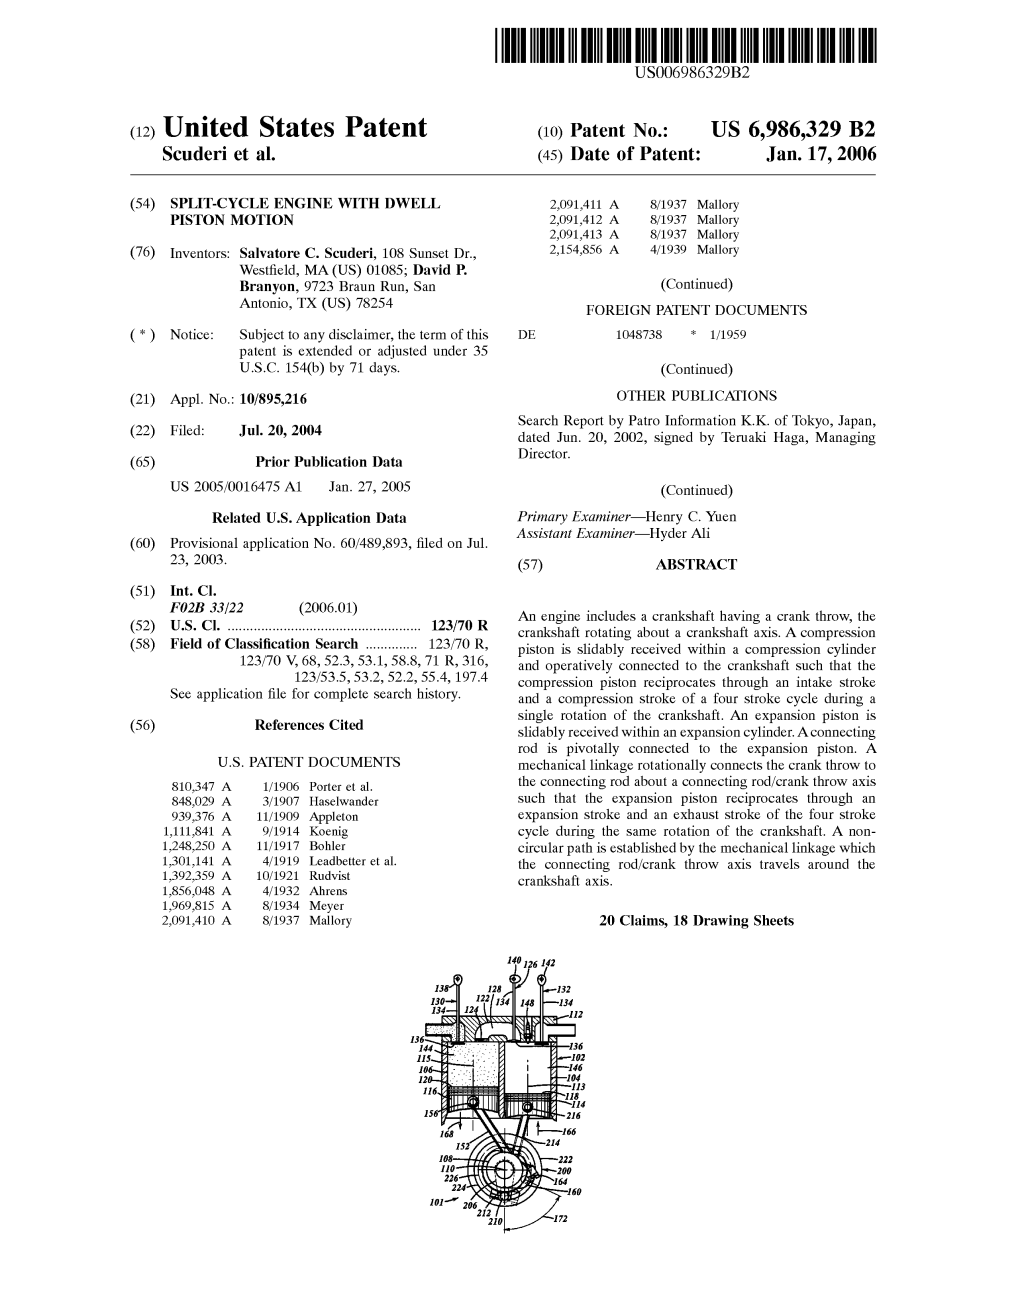 (12) United States Patent (10) Patent No.: US 6,986,329 B2 Scuderi Et Al